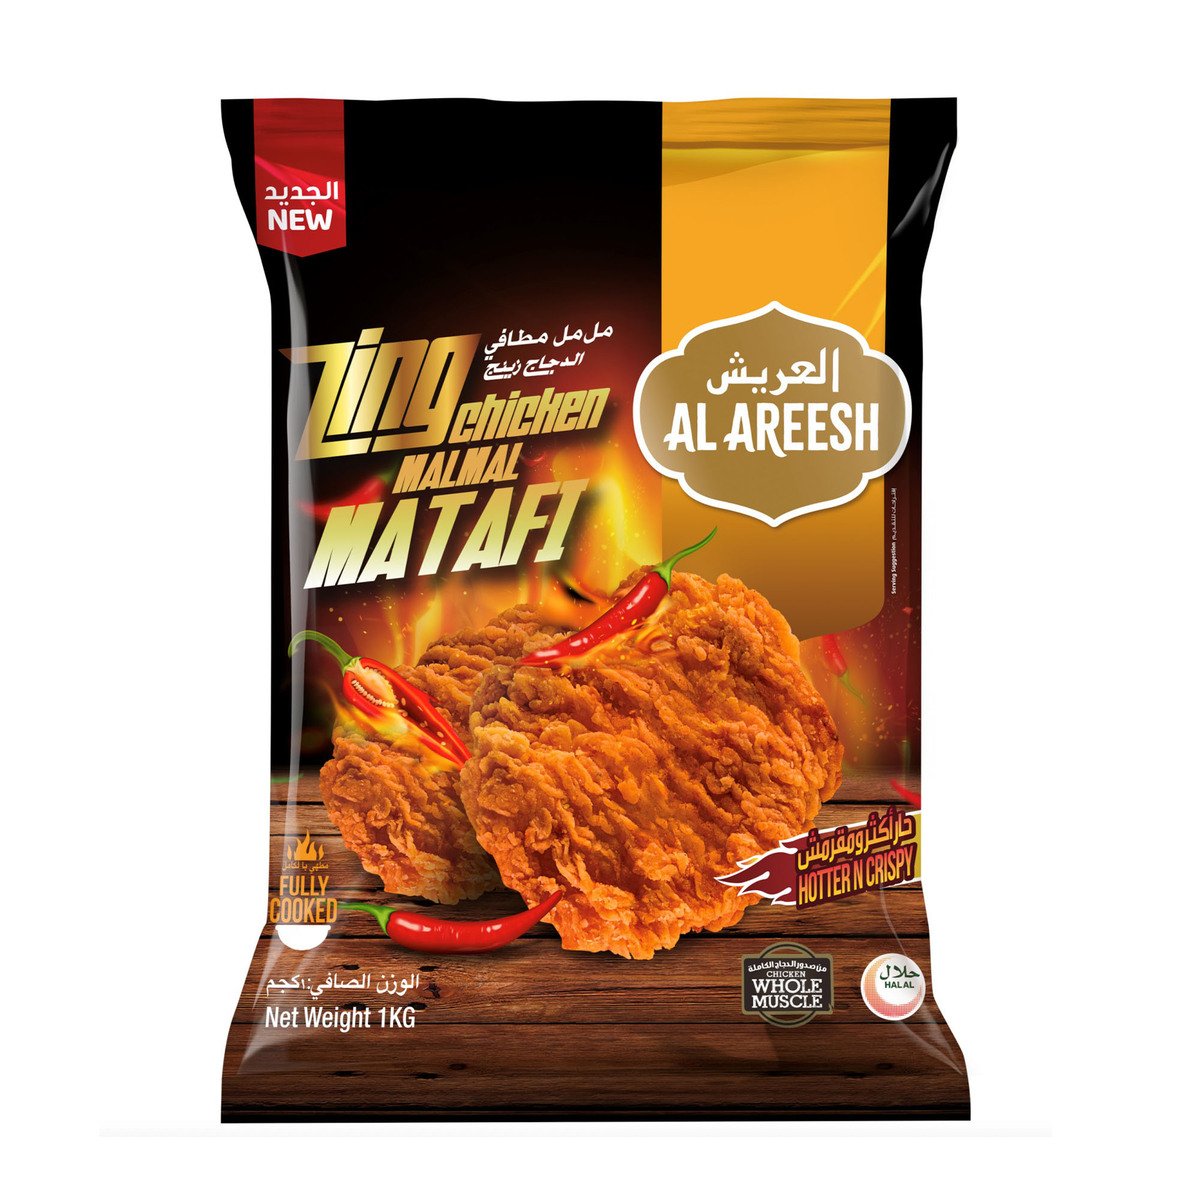 Buy Al Areesh Zing Chicken Malmal Matafi Value Pack 1 kg Online at Best Price | Zingers | Lulu UAE in UAE